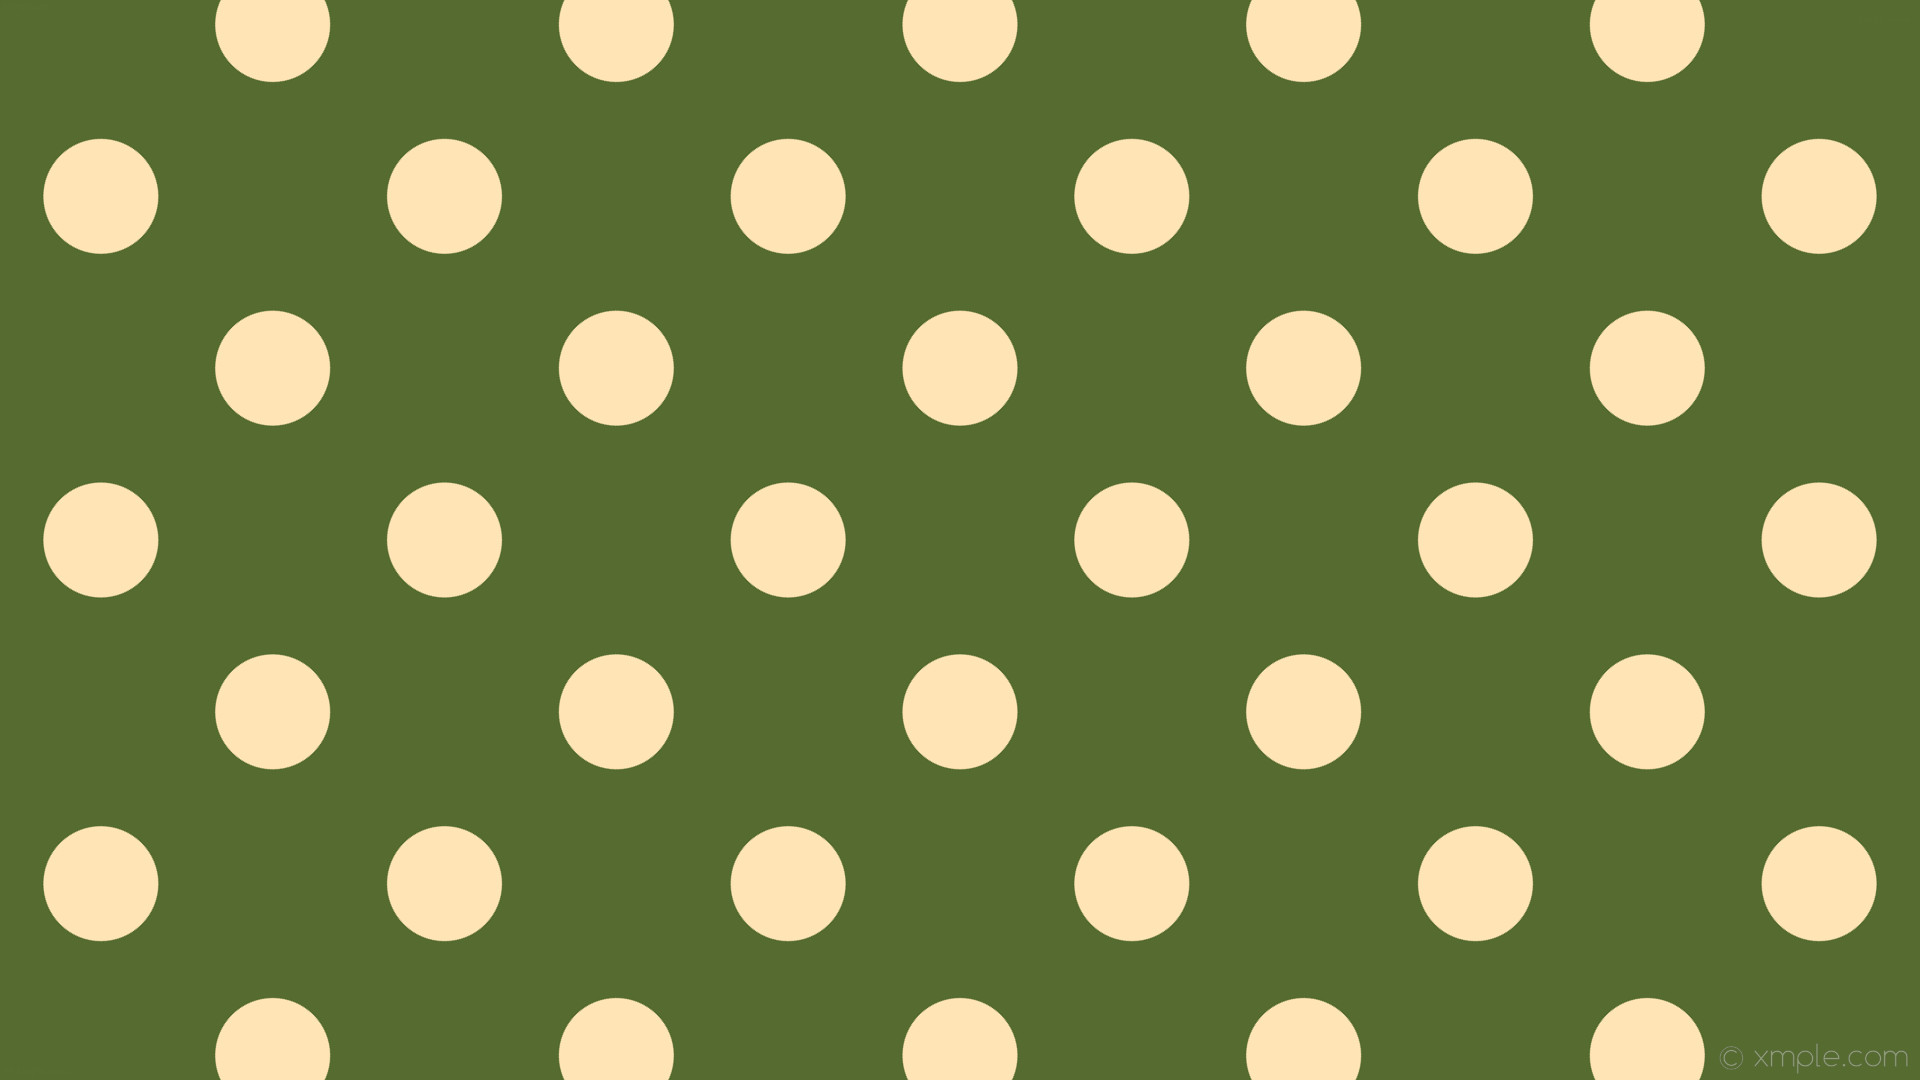 1920x1080 wallpaper spots polka green yellow dots dark olive green moccasin #556b2f  #ffe4b5 135Â°